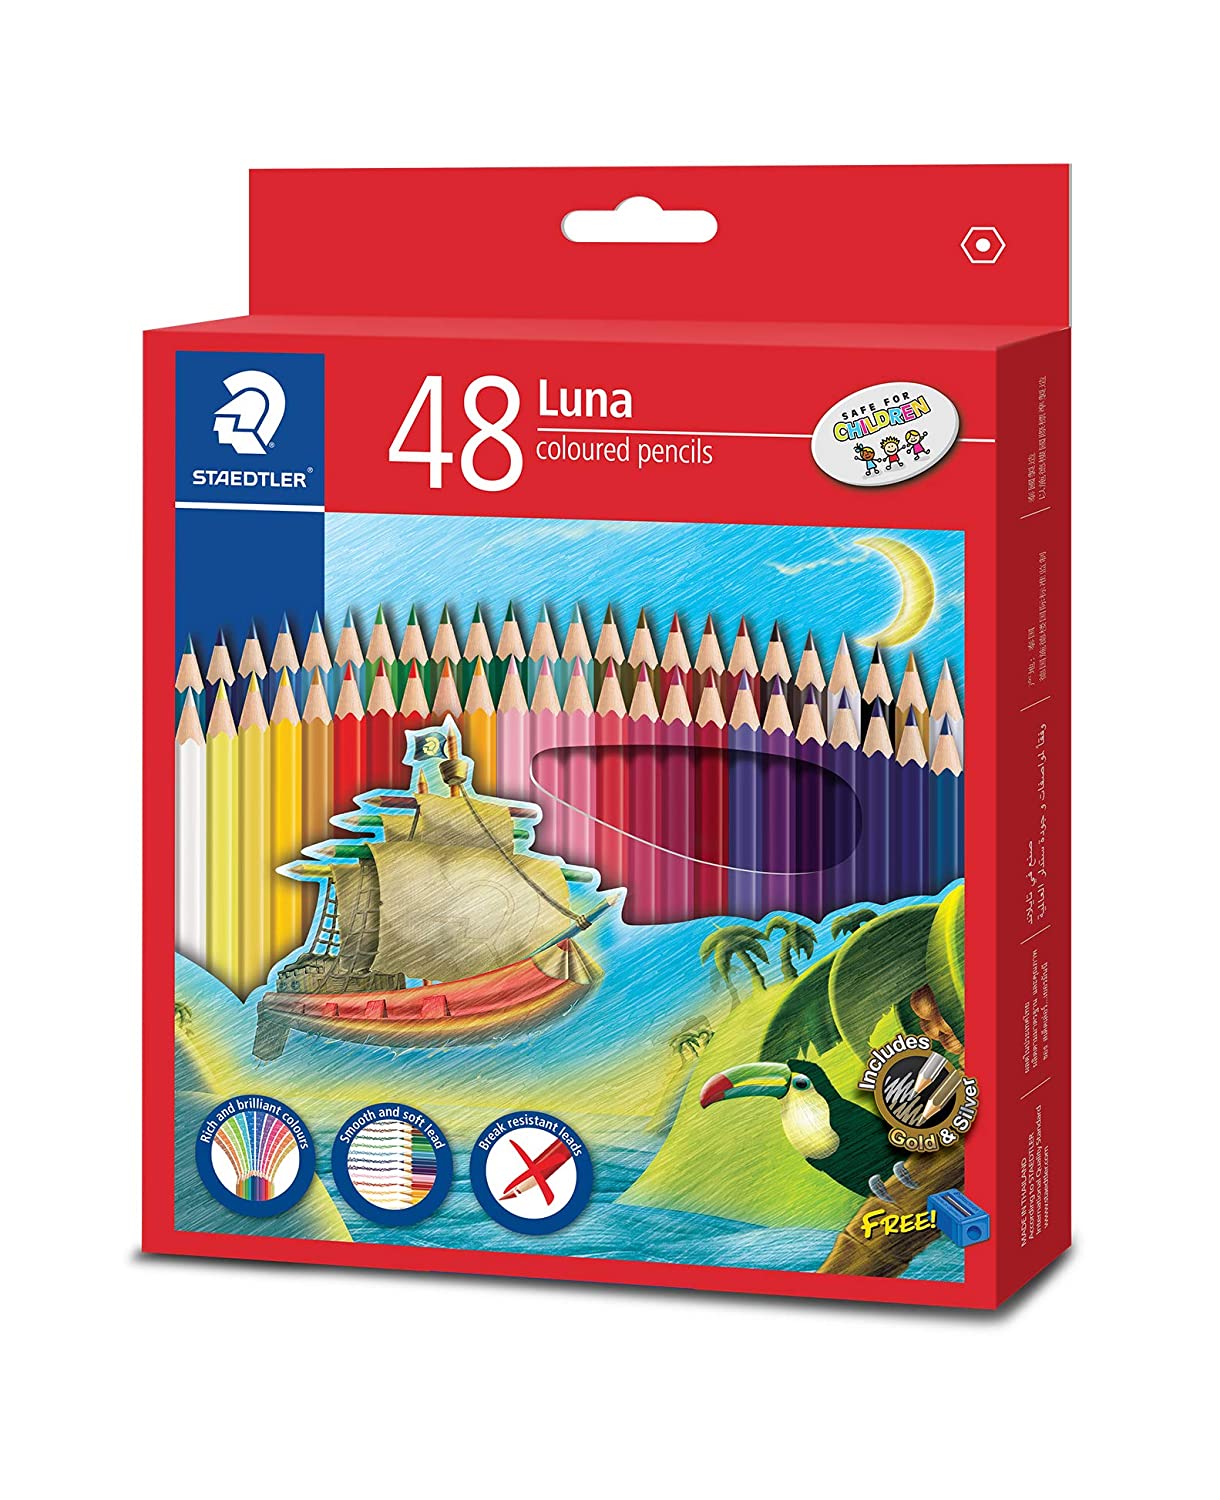 Staedtler 48 Shades Luna Coloured Pencil Set